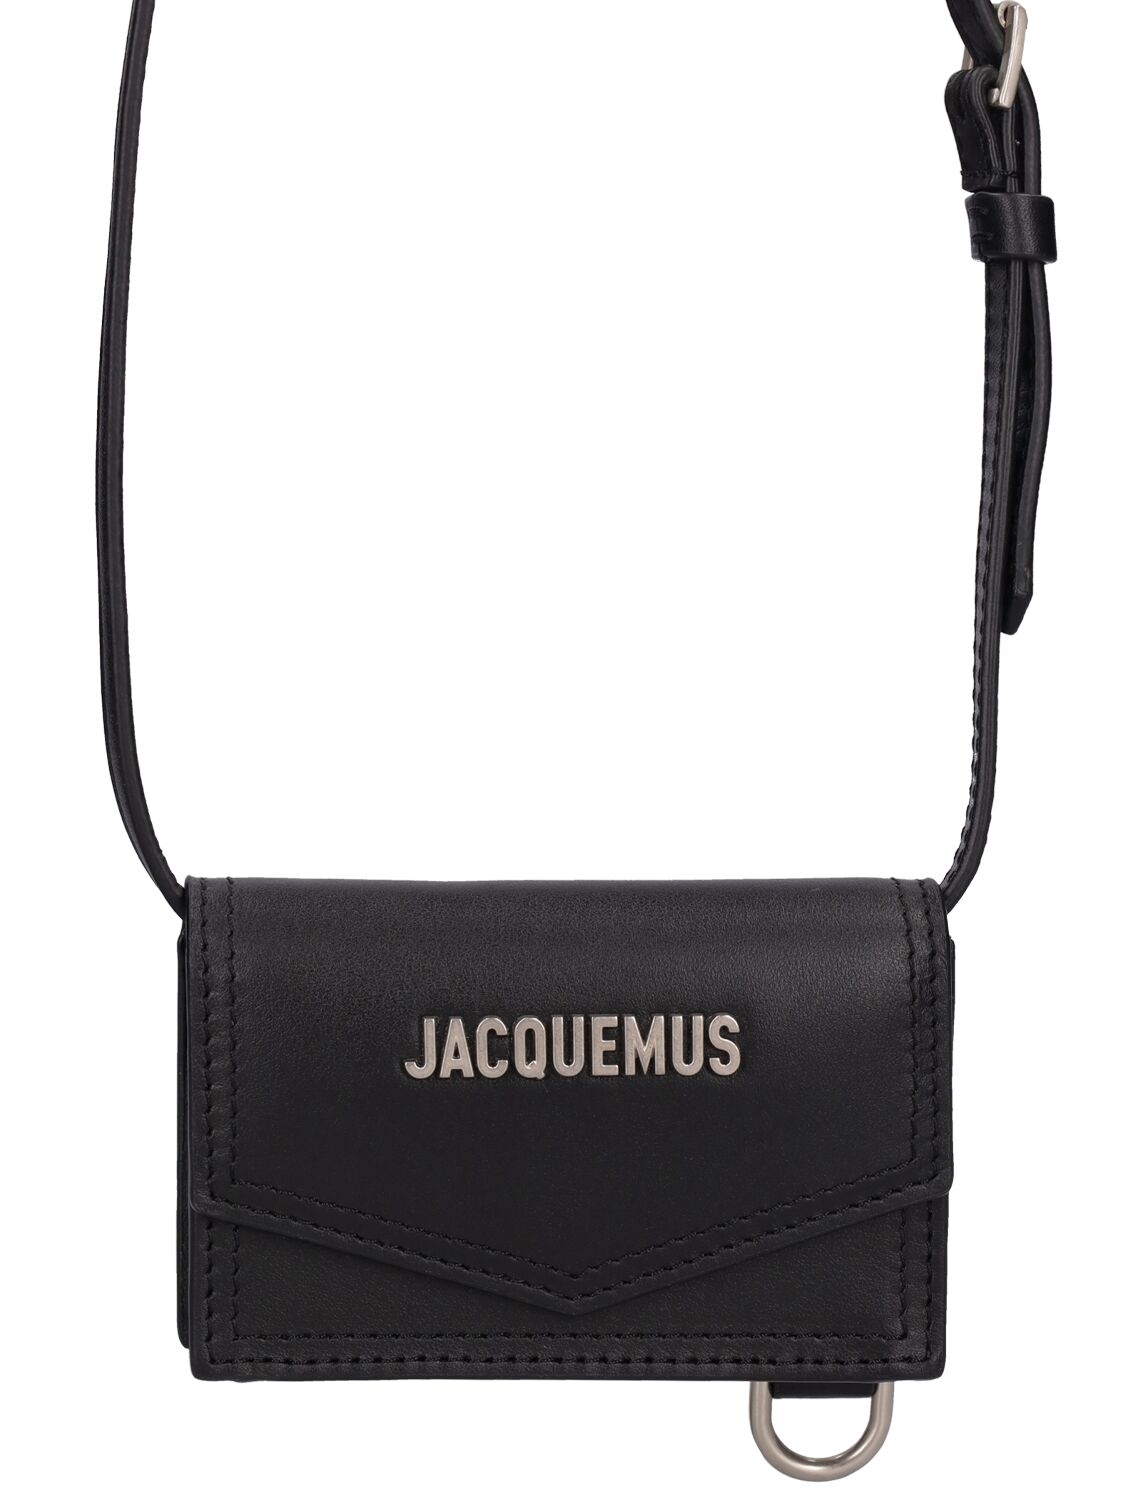 Jacquemus Le Porte Azur Leather Wallet In Black